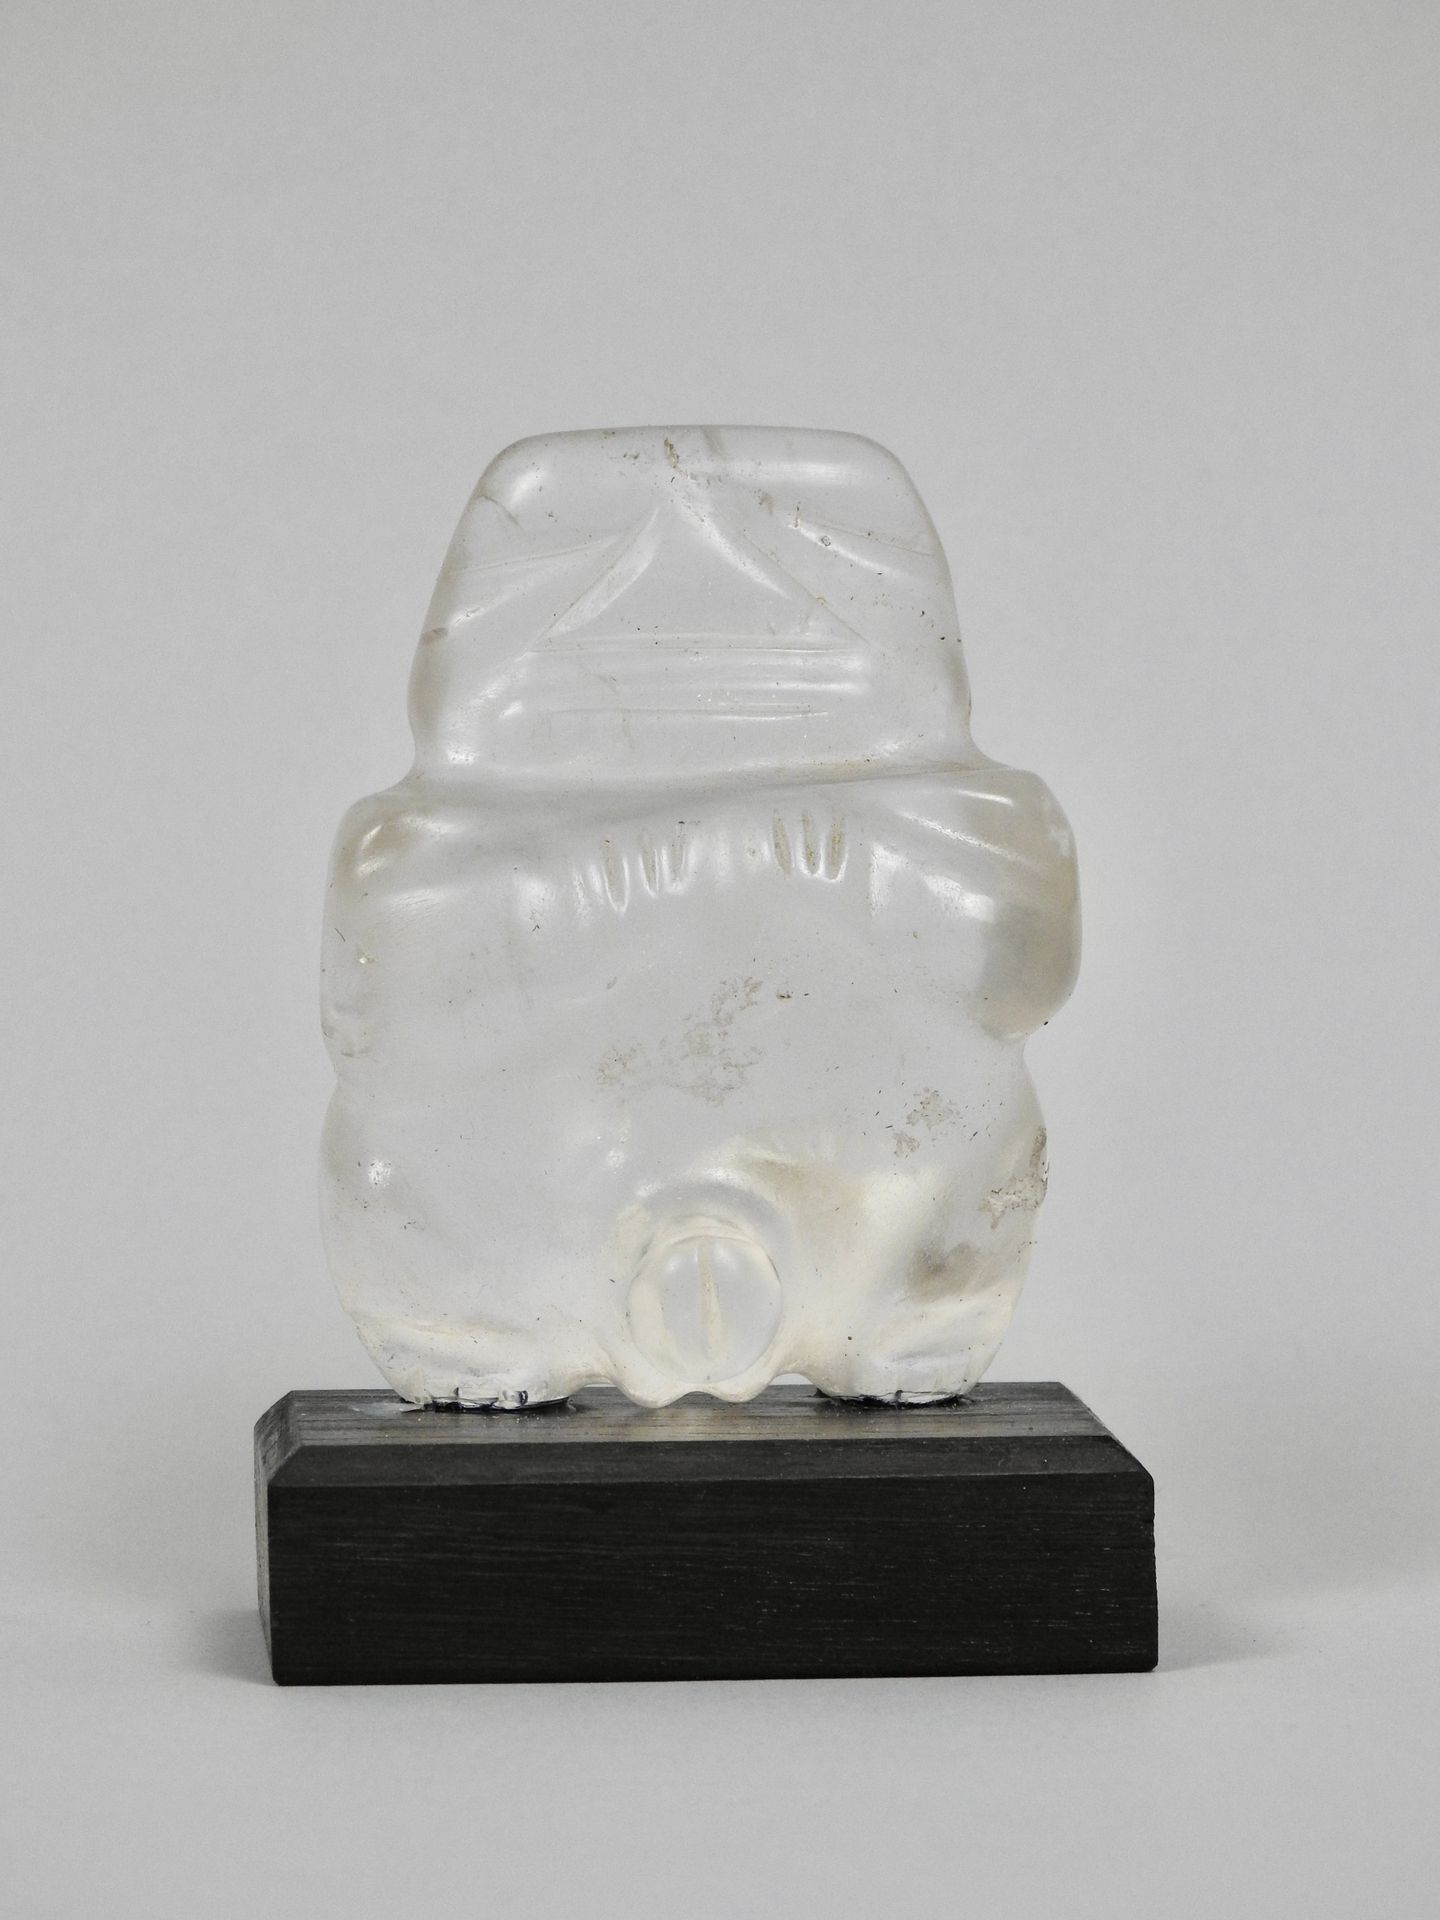 Null 卡利马或更晚的文化 男性生殖偶像 透明的岩石晶体

高8.5厘米